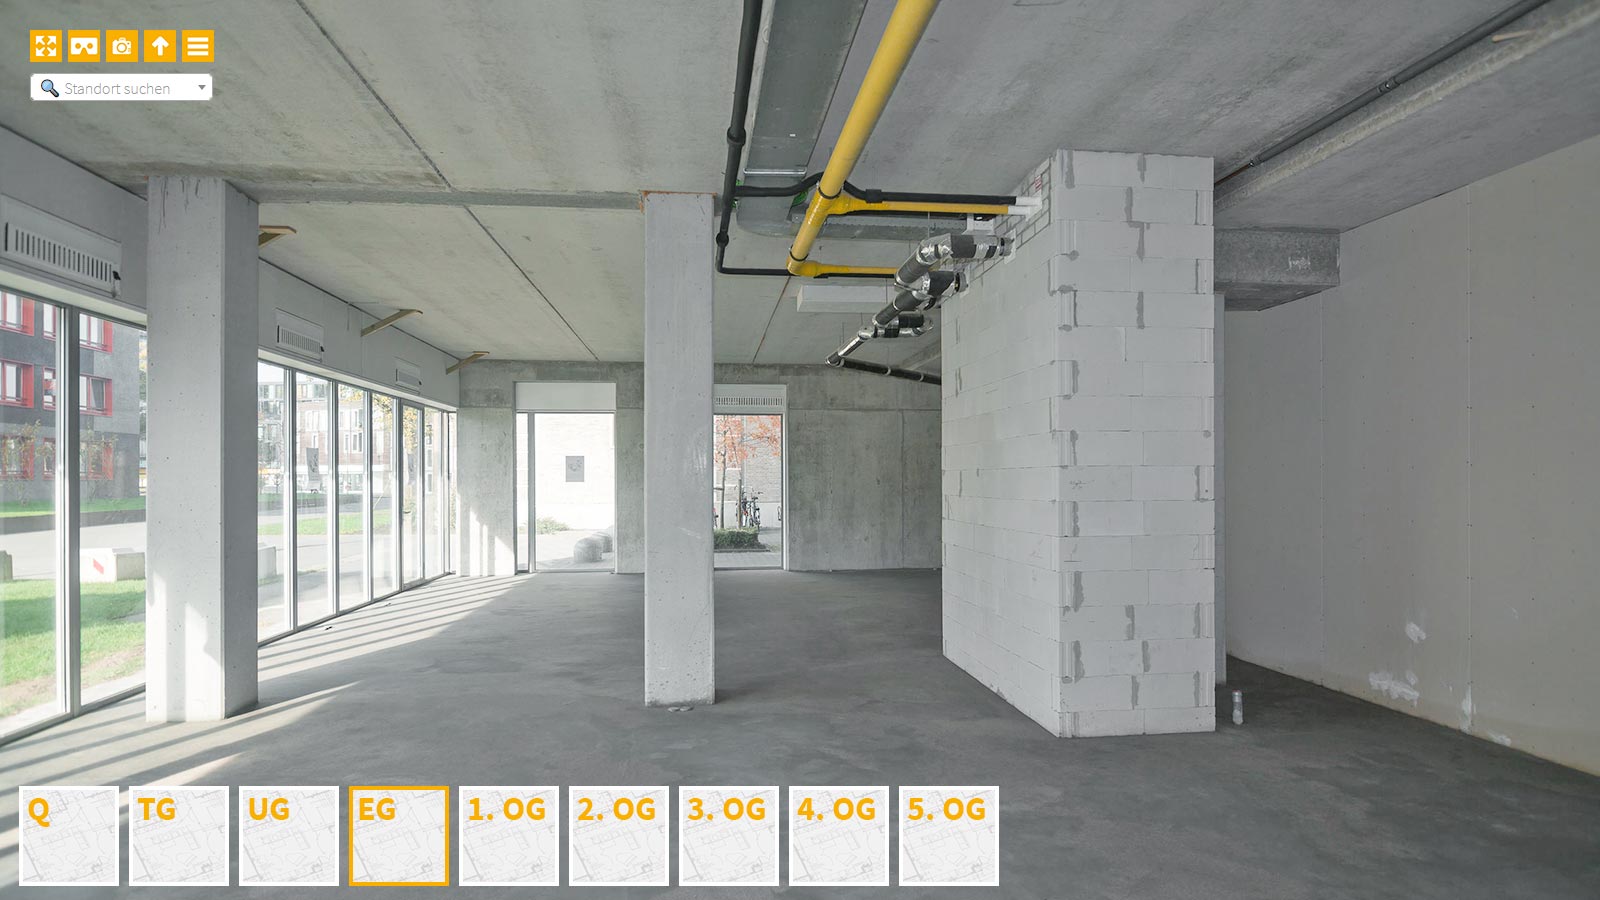 Baudokumentation 360 Grad bei gestörten Projekten in 


	


	


	


	


	


	


	


	


	


	Duisburg









, Bilddokumentation als virtueller Rundgang